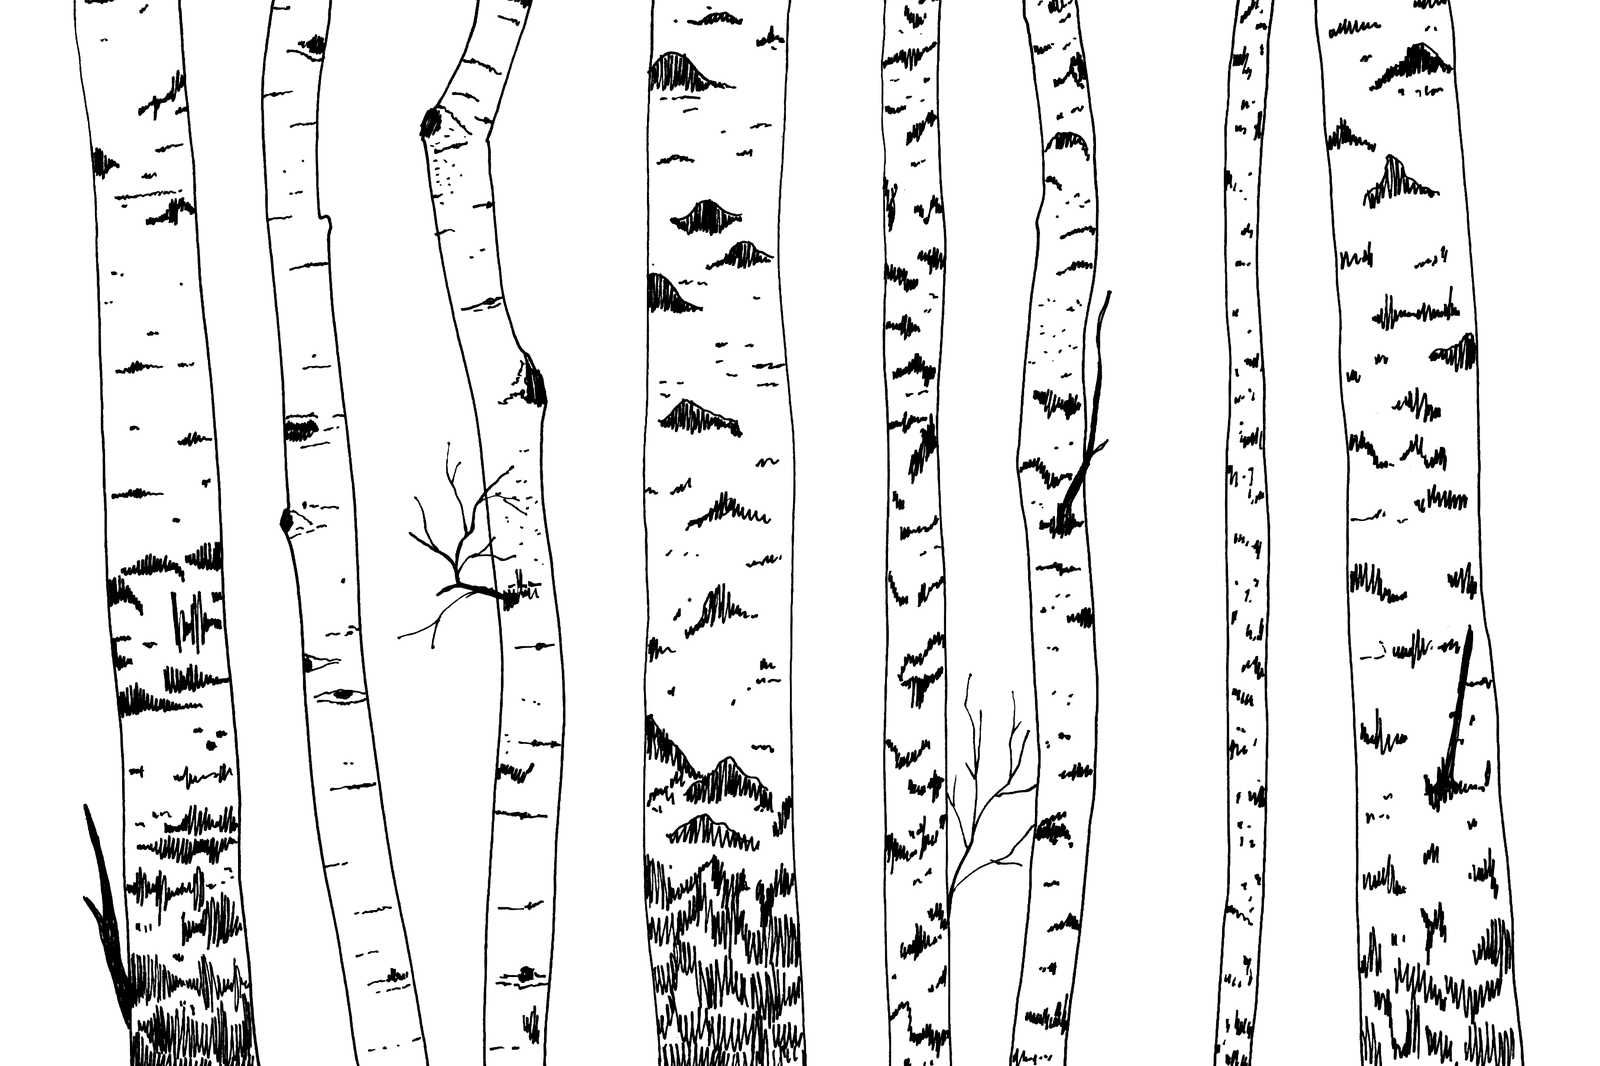             Canvas drawn birch forest - 90 cm x 60 cm
        